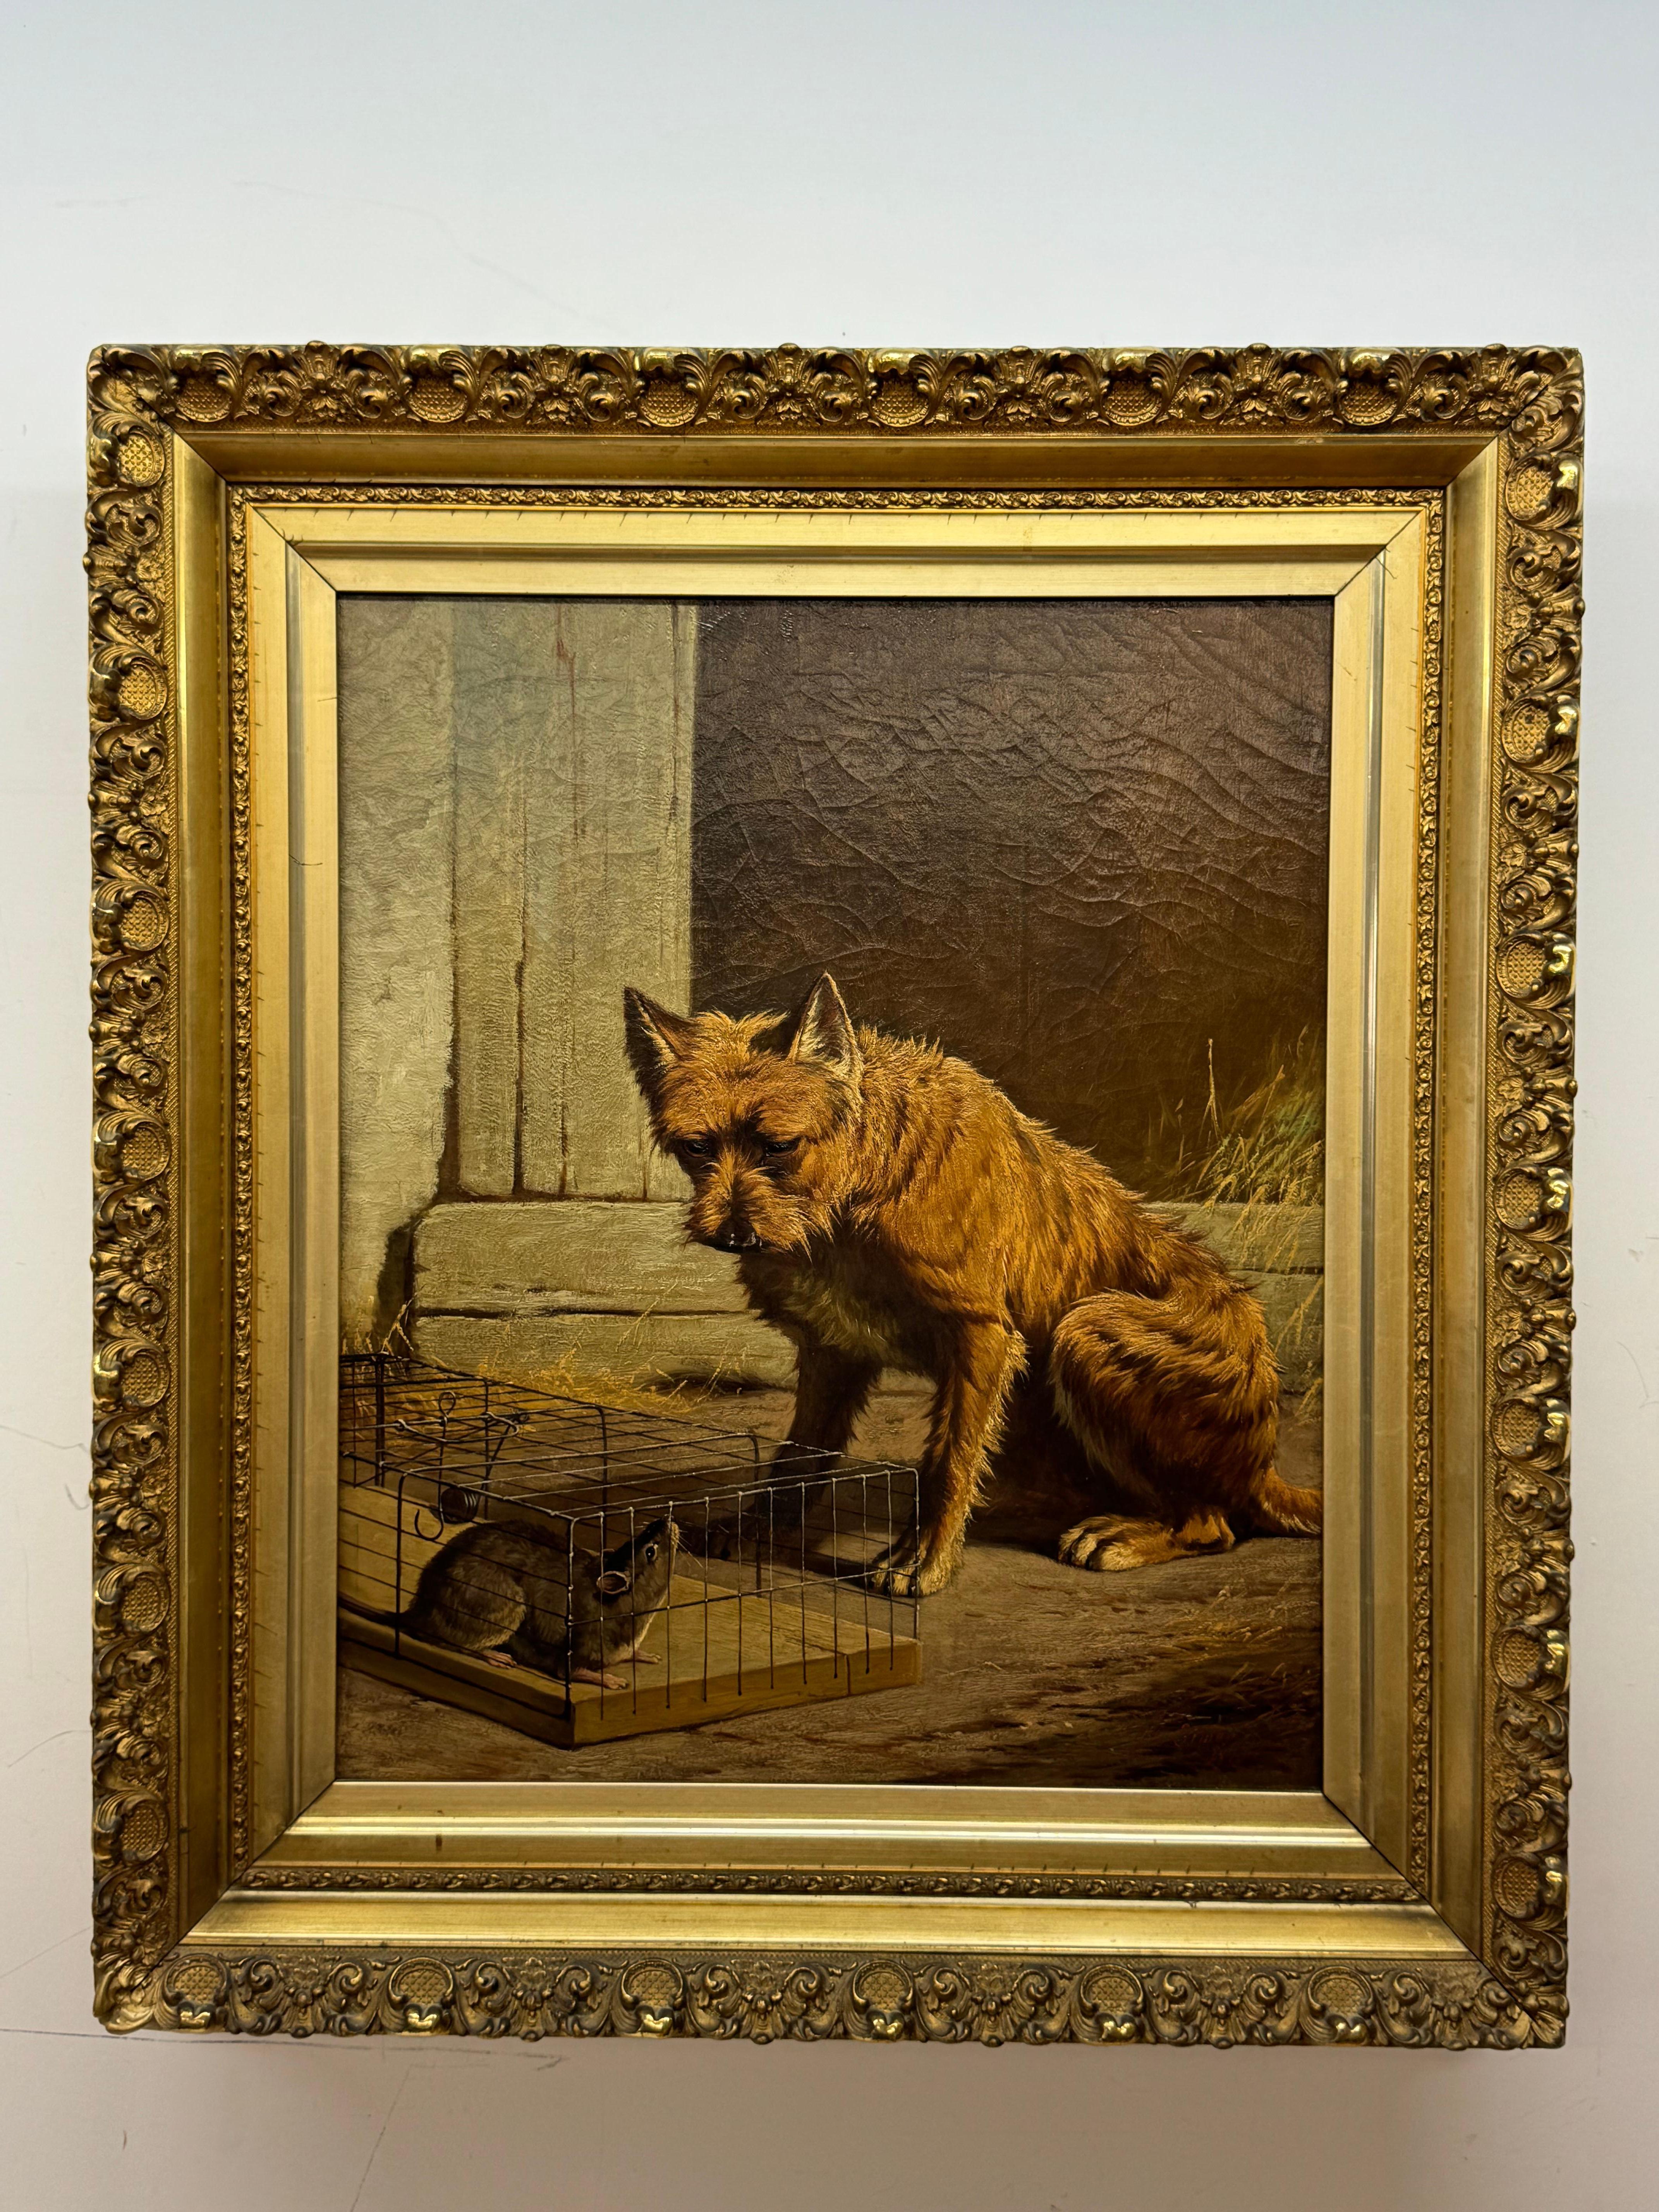 H. Simon 1879, Zwei Freunde, Terrier mit Rattenüberwurf

Öl auf Leinwand

Vergoldeter Rahmen

20 x 24 ungerahmt, 27 x 31 gerahmt